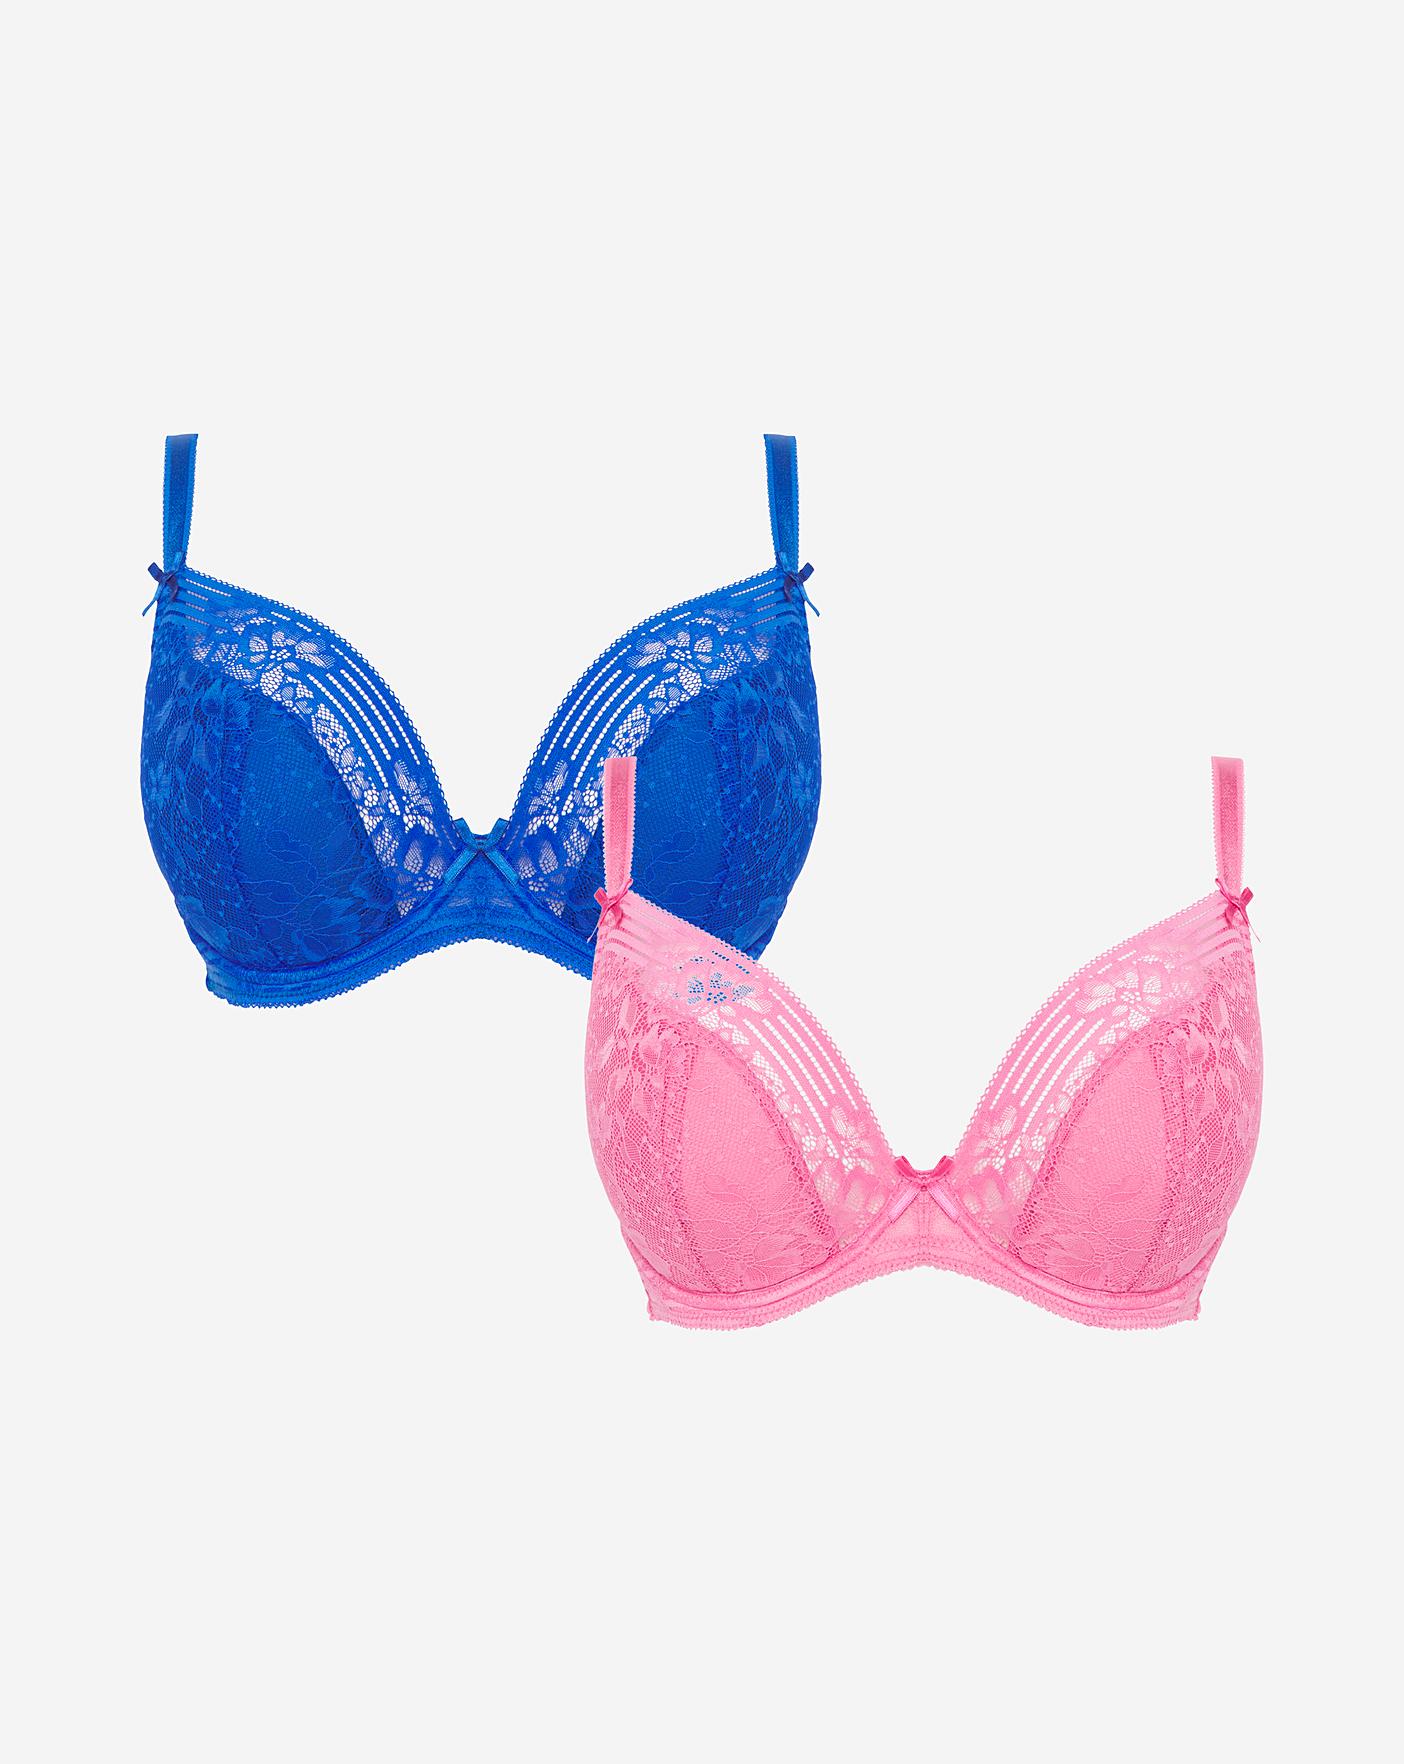 Victoria's Secret Bombshell 38DD Bras & Bra Sets for Women for sale